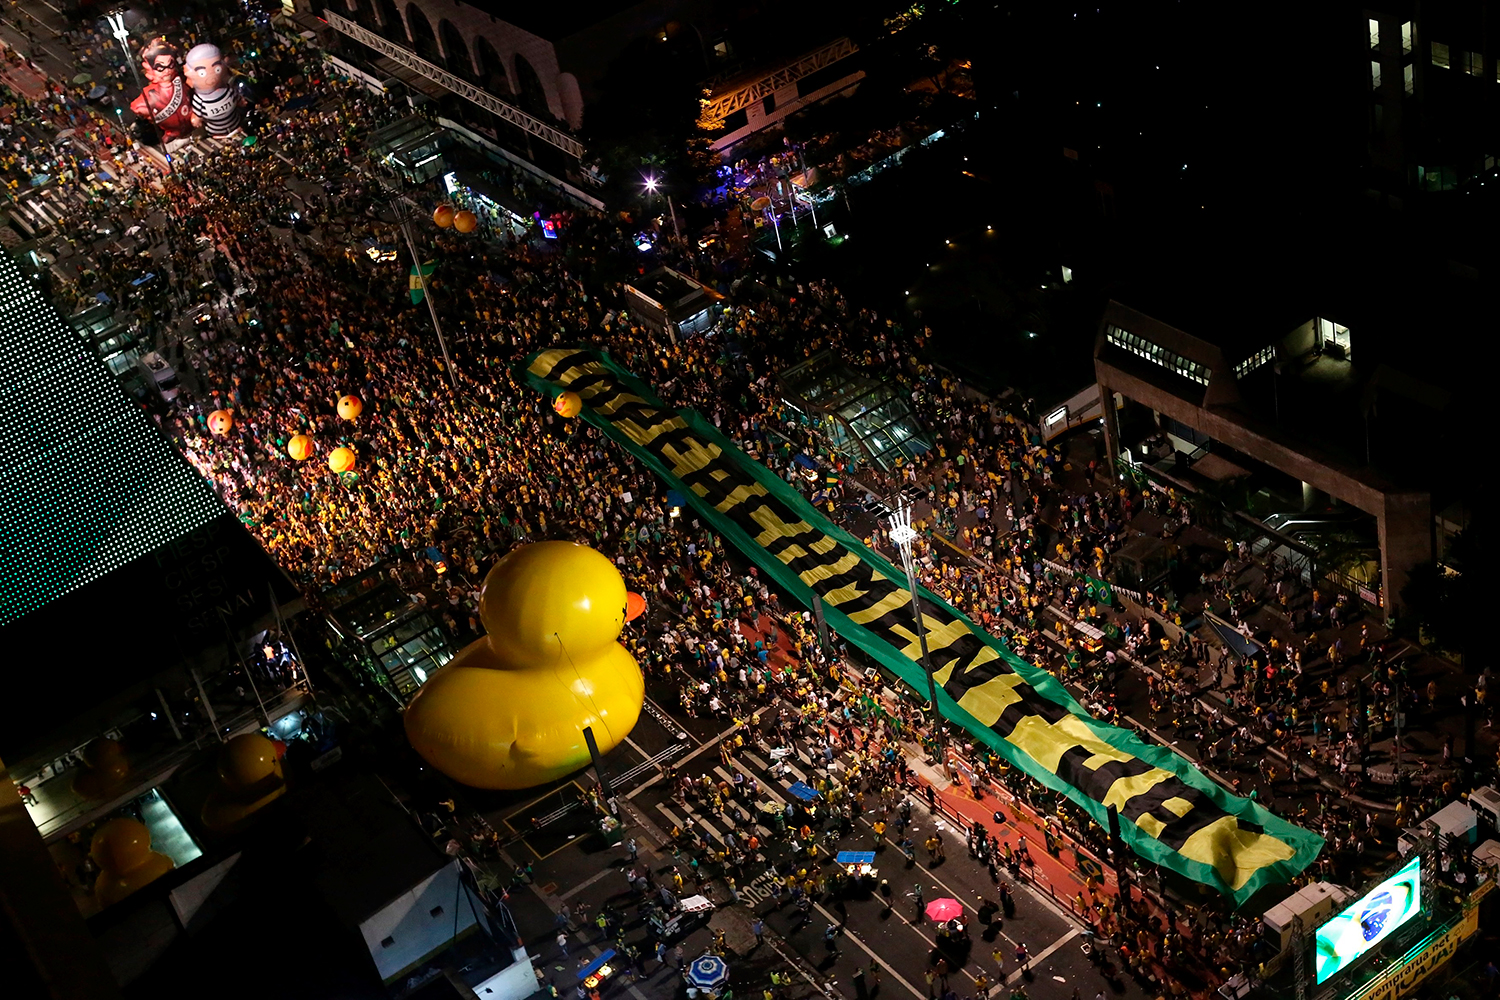 Comienza el juicio político para destituir a Dilma Rousseff